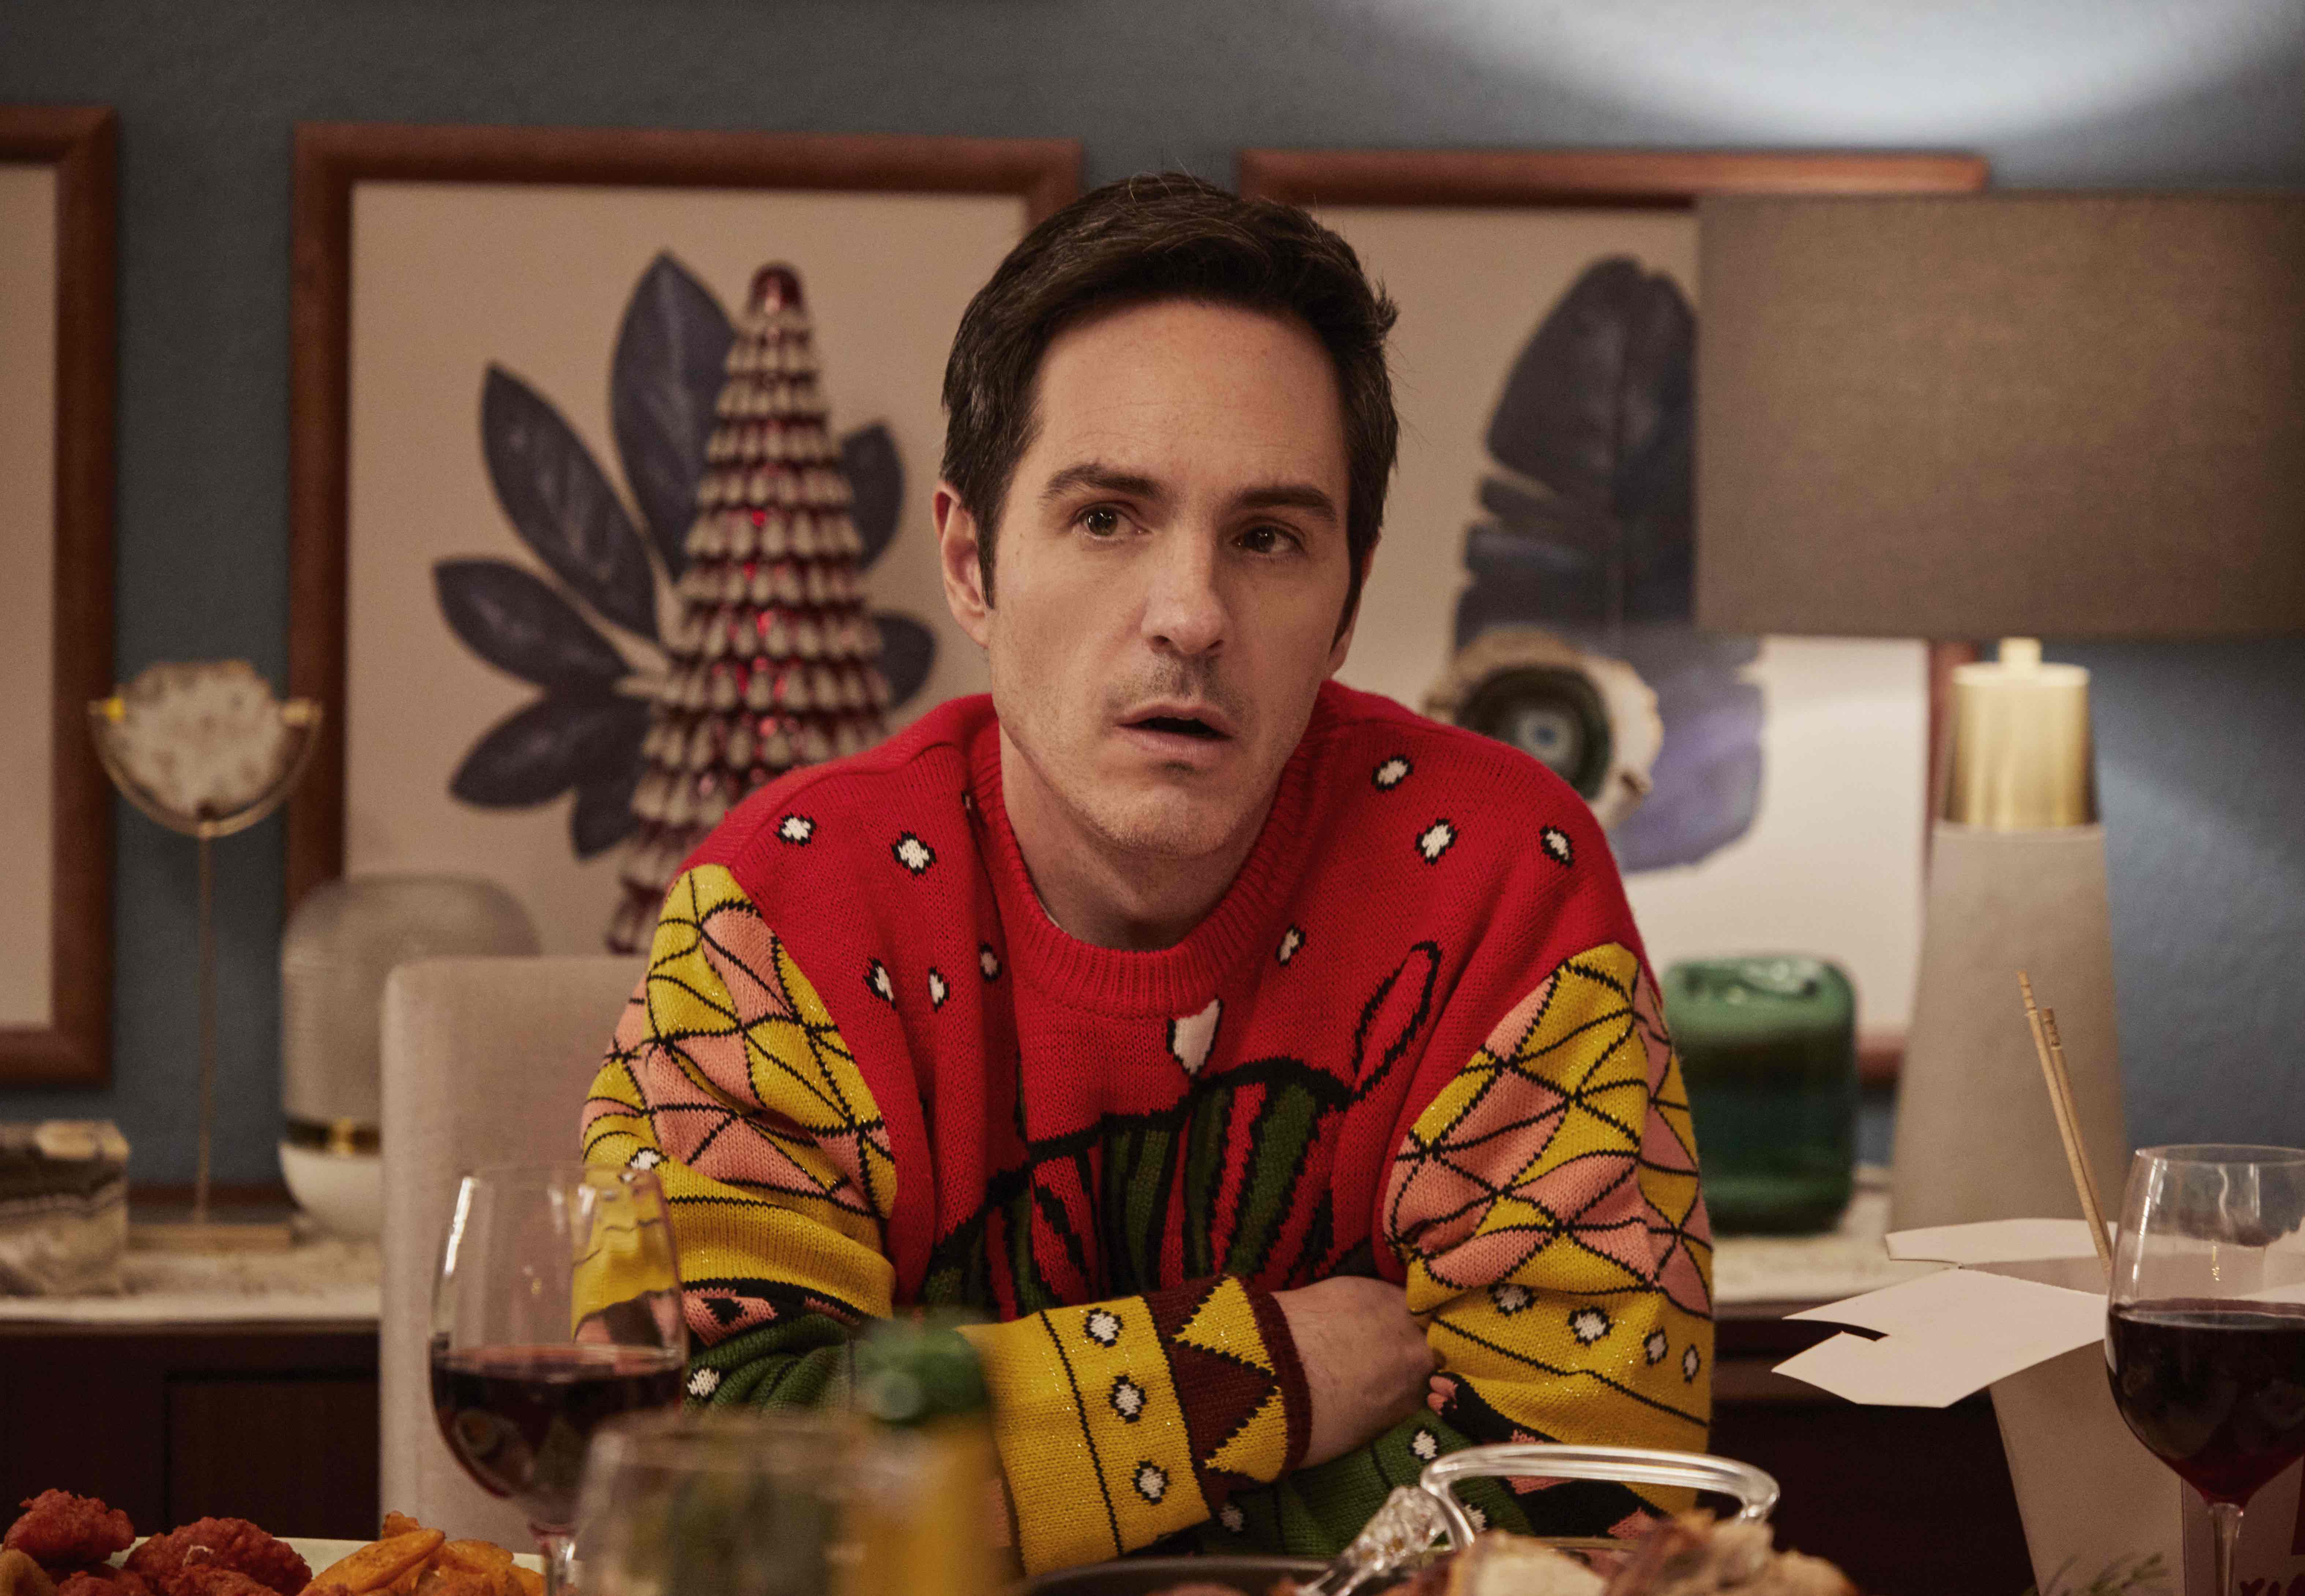 A Not So Merry Christmas Cast on Netflix - Mauricio Ochmann as Chuy